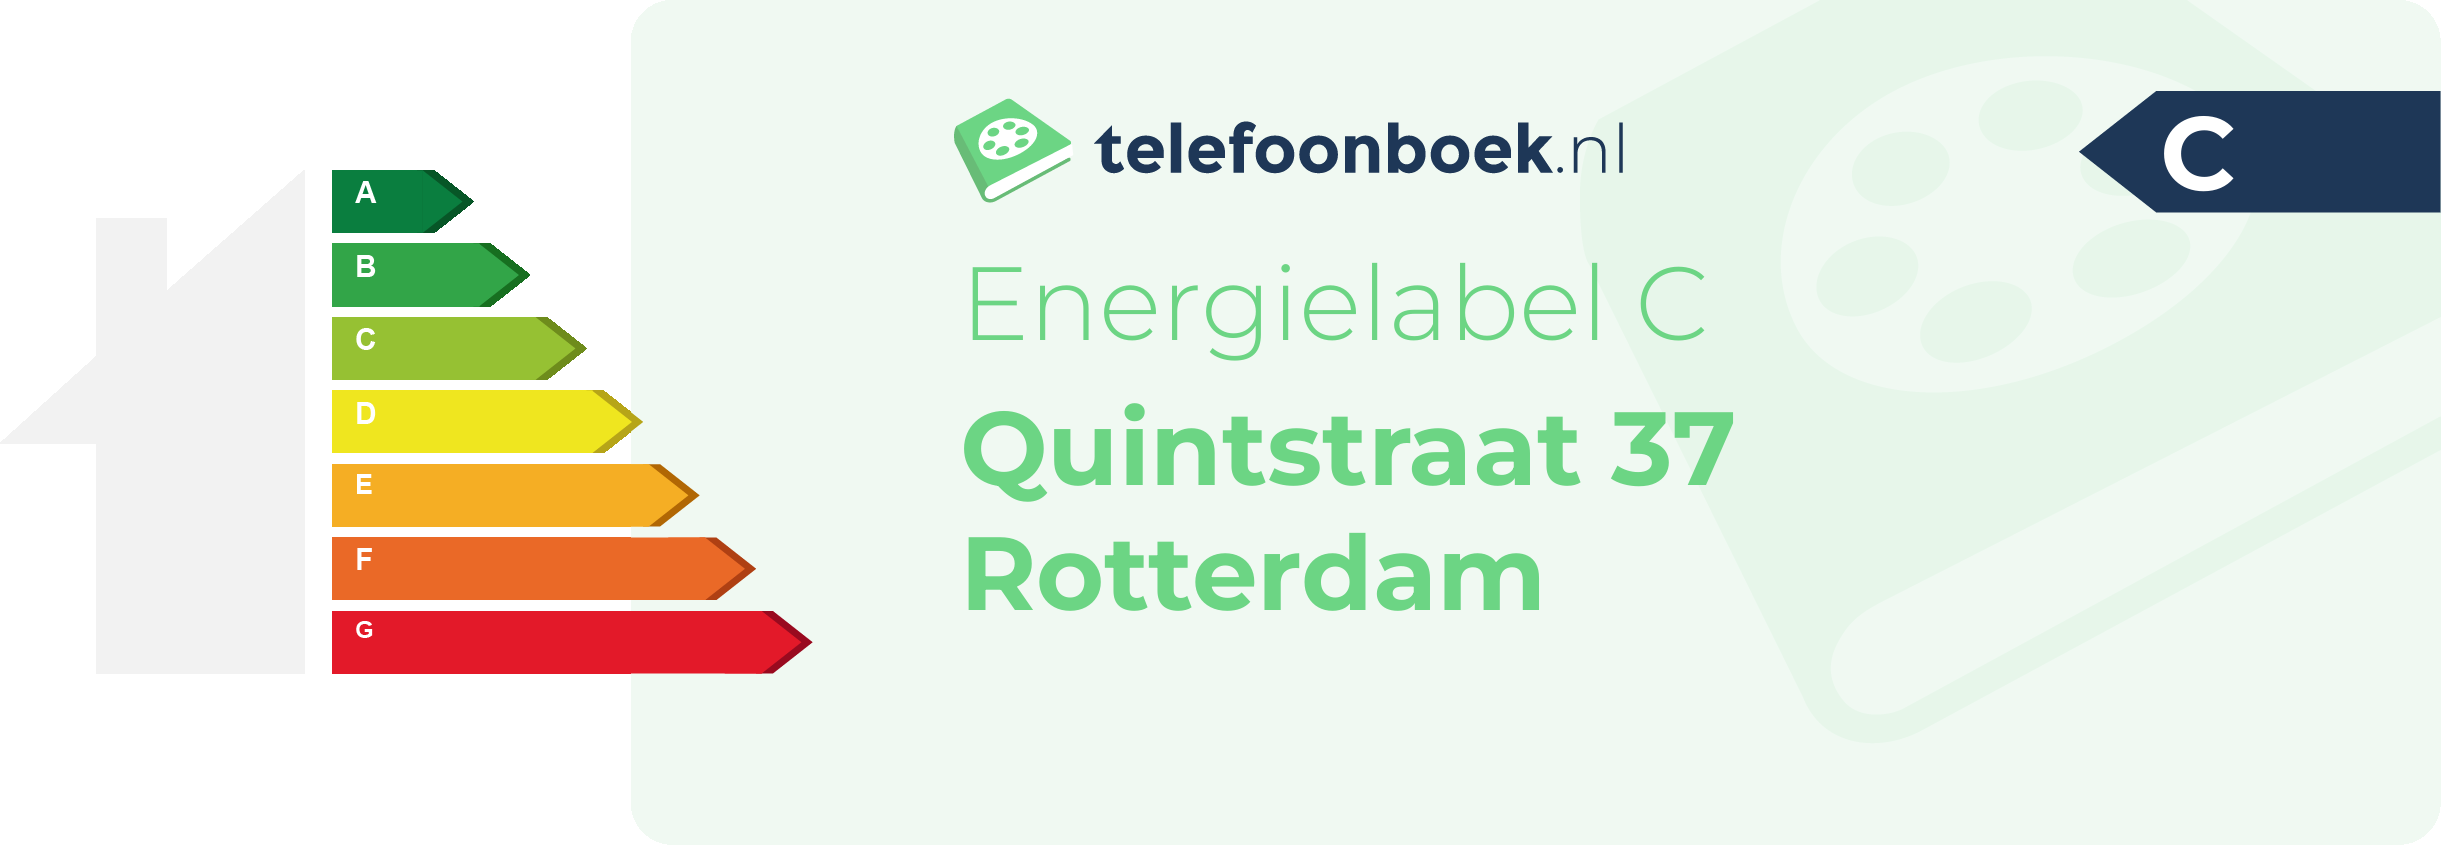 Energielabel Quintstraat 37 Rotterdam